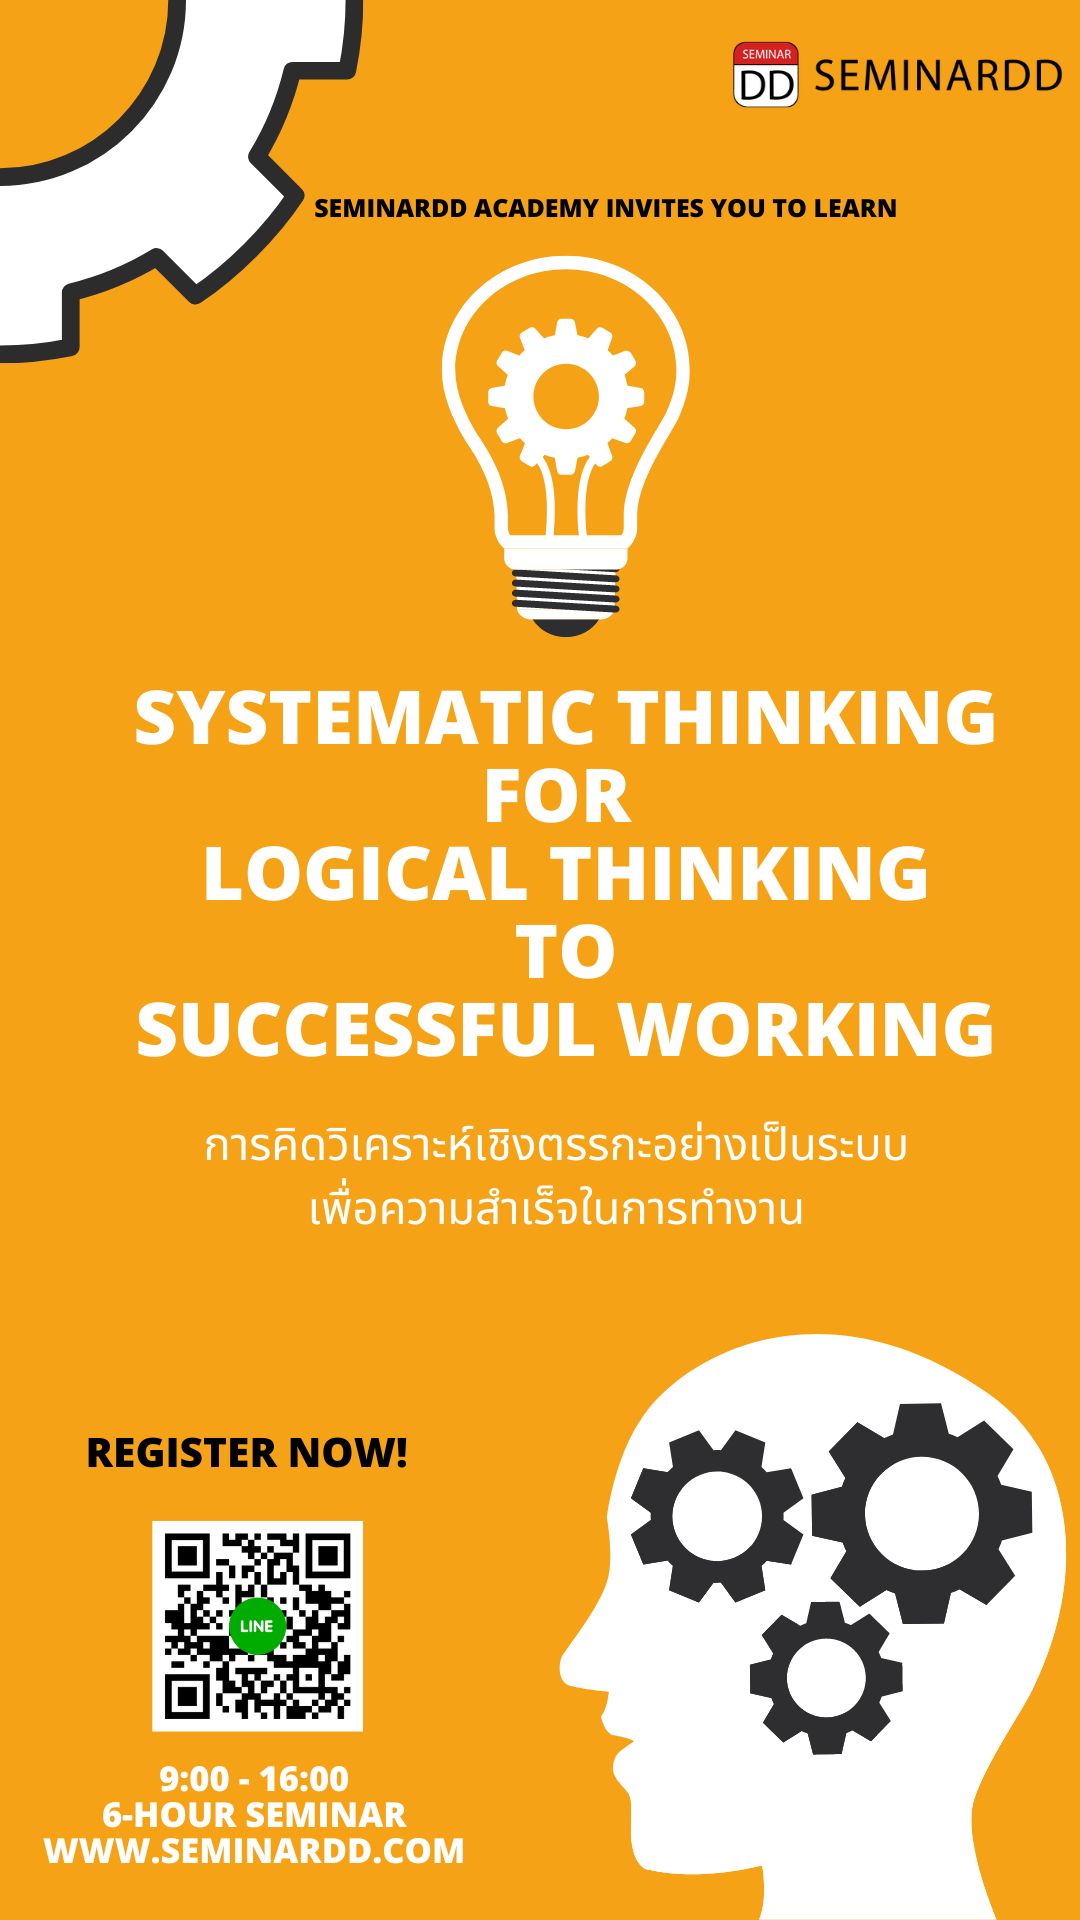 การคิดวิเคราะห์เชิงตรรกะอย่างเป็นระบบเพื่อความสำเร็จในการทำงาน ( Systematic Thinking for Logical  Thinking to Successful Working )